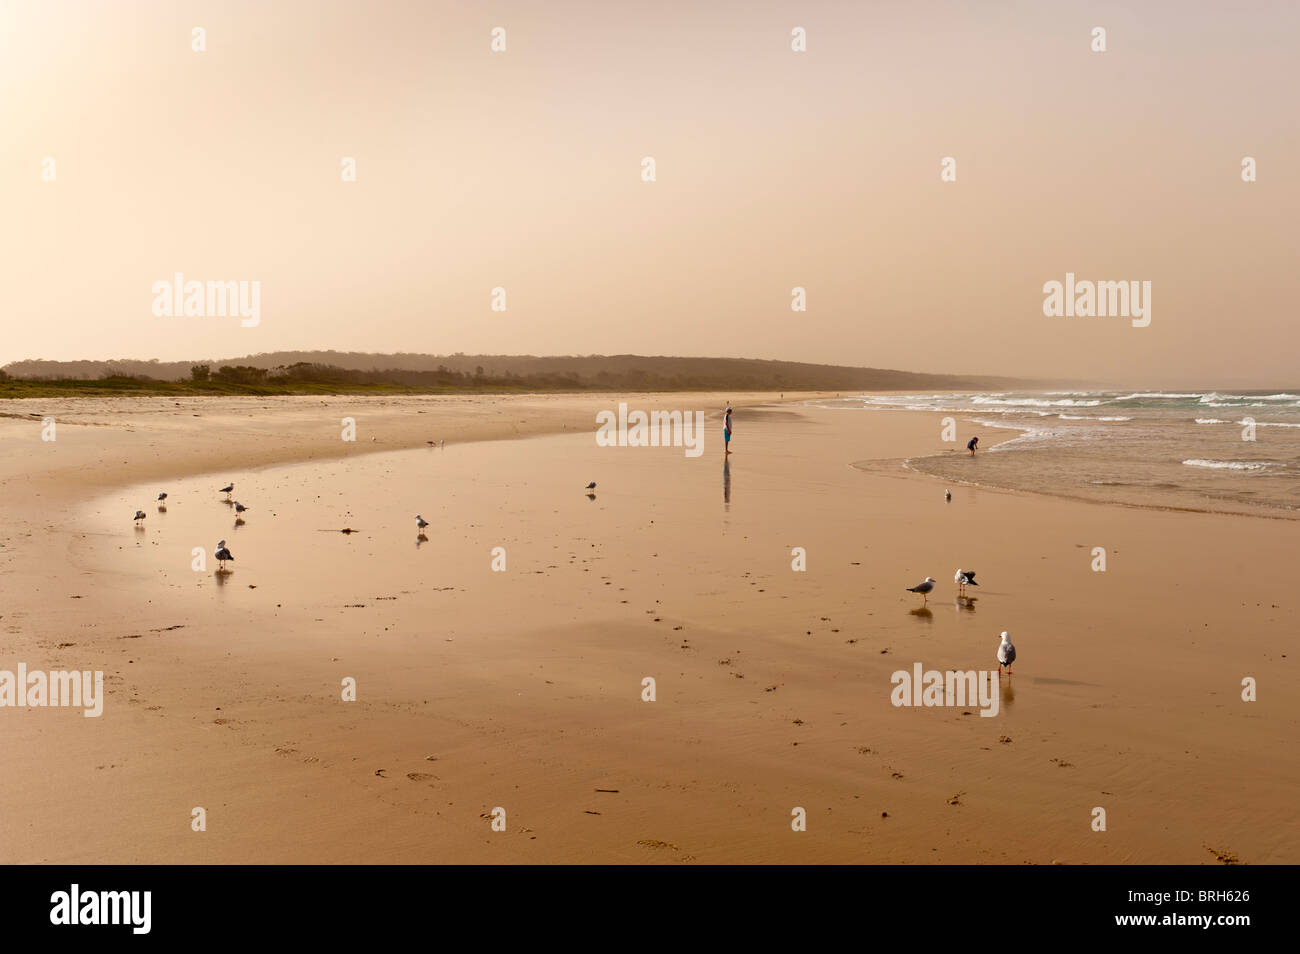 Dalmeny Beach in a dust storm. NSW, Australia Stock Photo